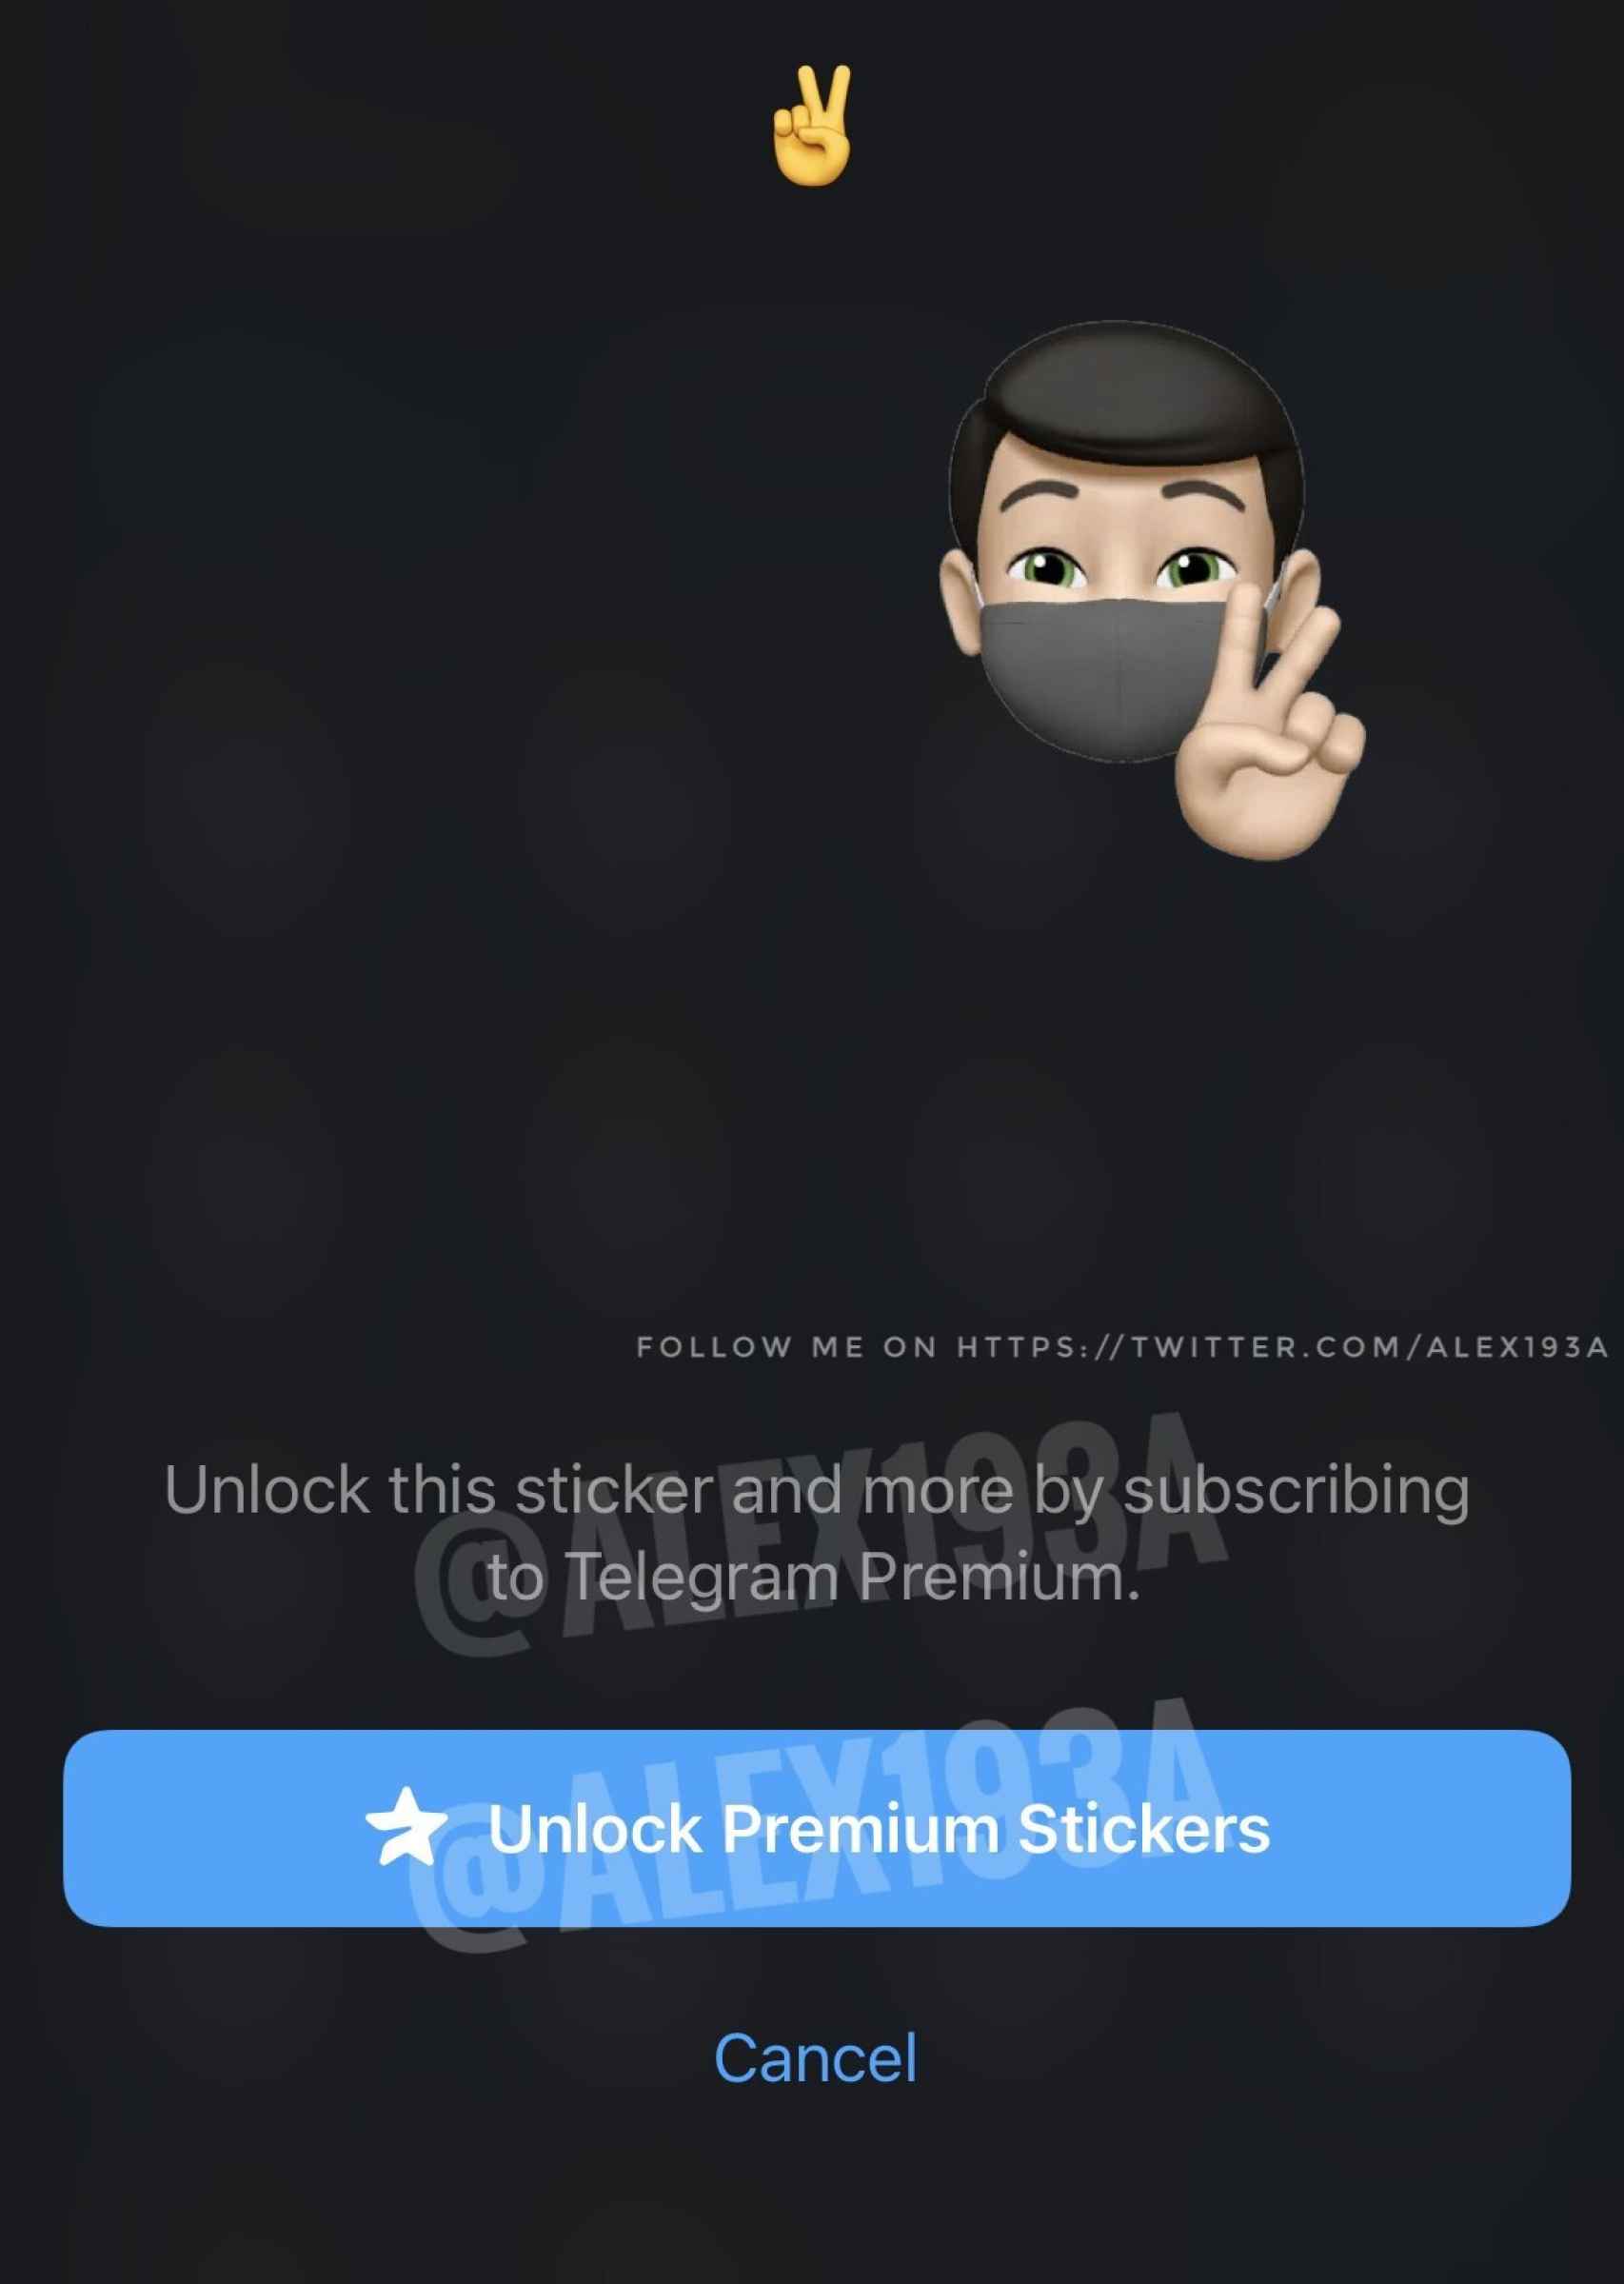 Sticker Premium Telegram